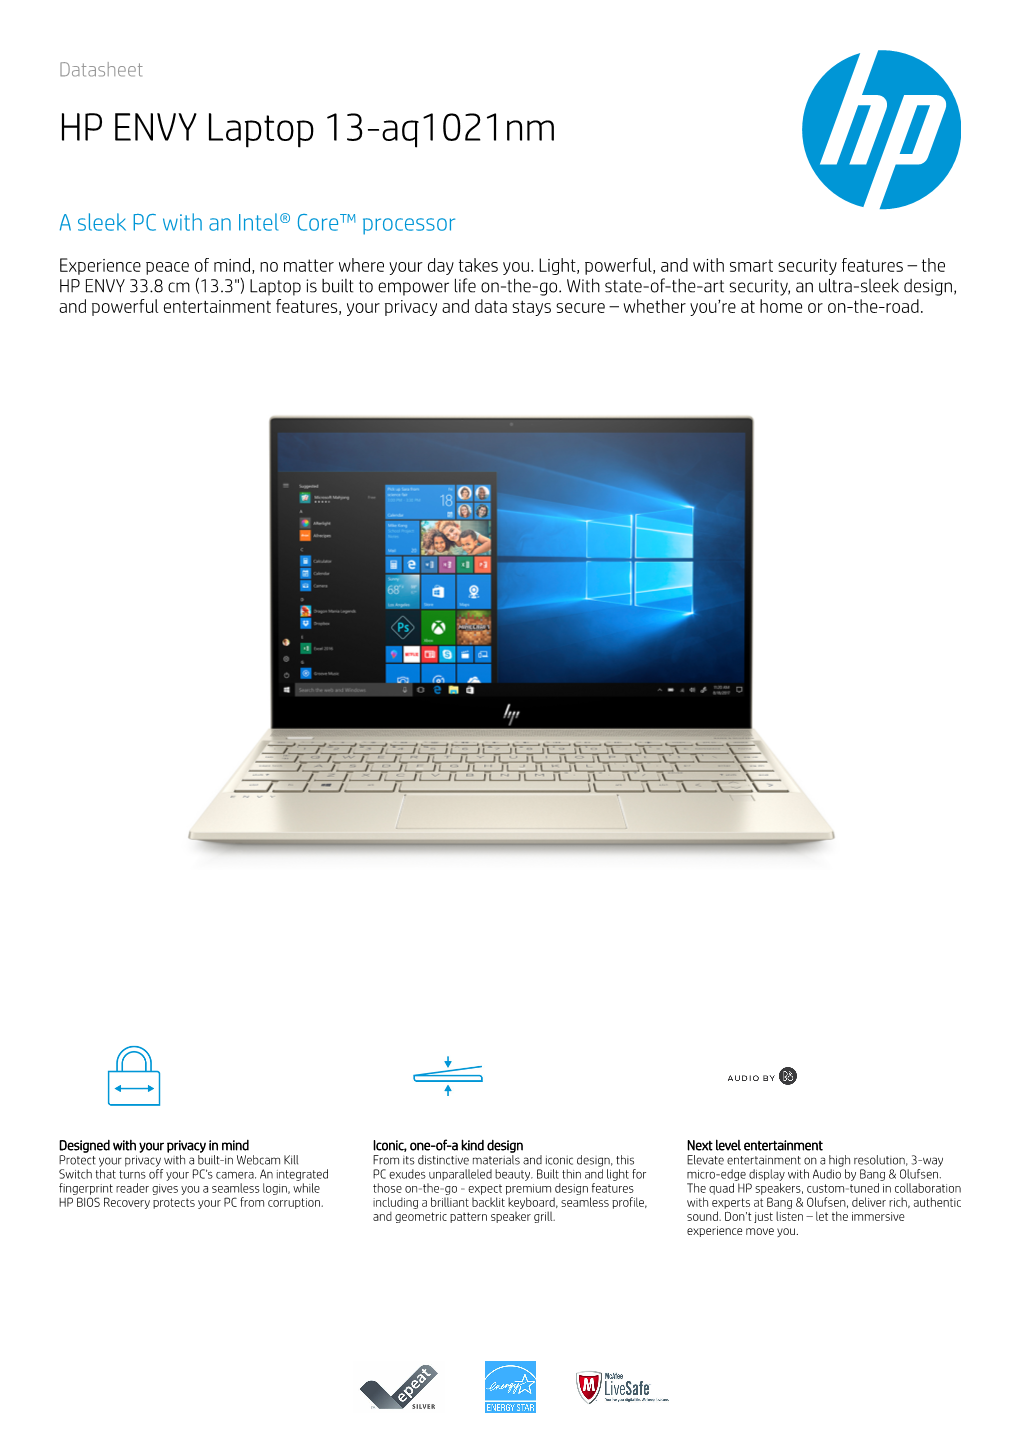 HP ENVY Laptop 13-Aq1021nm